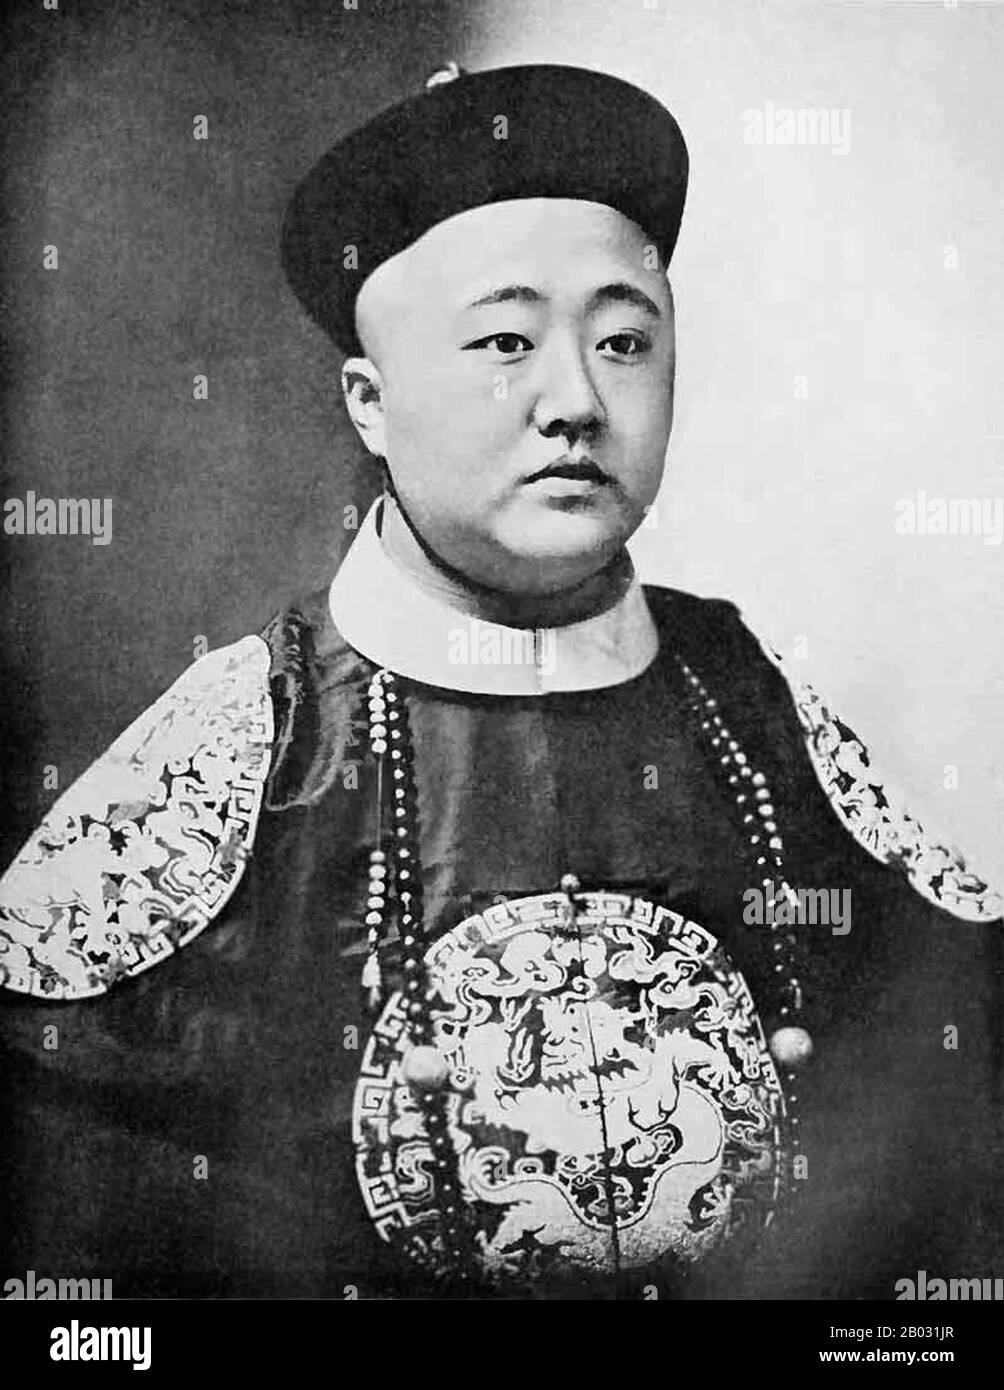 Nel 1909, Zaixun fu nominato Ministro della Marina militare nella Gabinetto Imperiale guidato dal Principe Qing. In seguito, fu inviato in Europa e negli Stati Uniti per studiare le marine delle potenze occidentali. Dopo il ritorno in Cina, nel 1911, divenne un ministro della Marina. Dopo la Rivoluzione Xinhai rovesciò la dinastia Qing, visse il resto della sua vita in pensione a Pechino e Tianjin. Morì a Tianjin nel 1949. Foto Stock